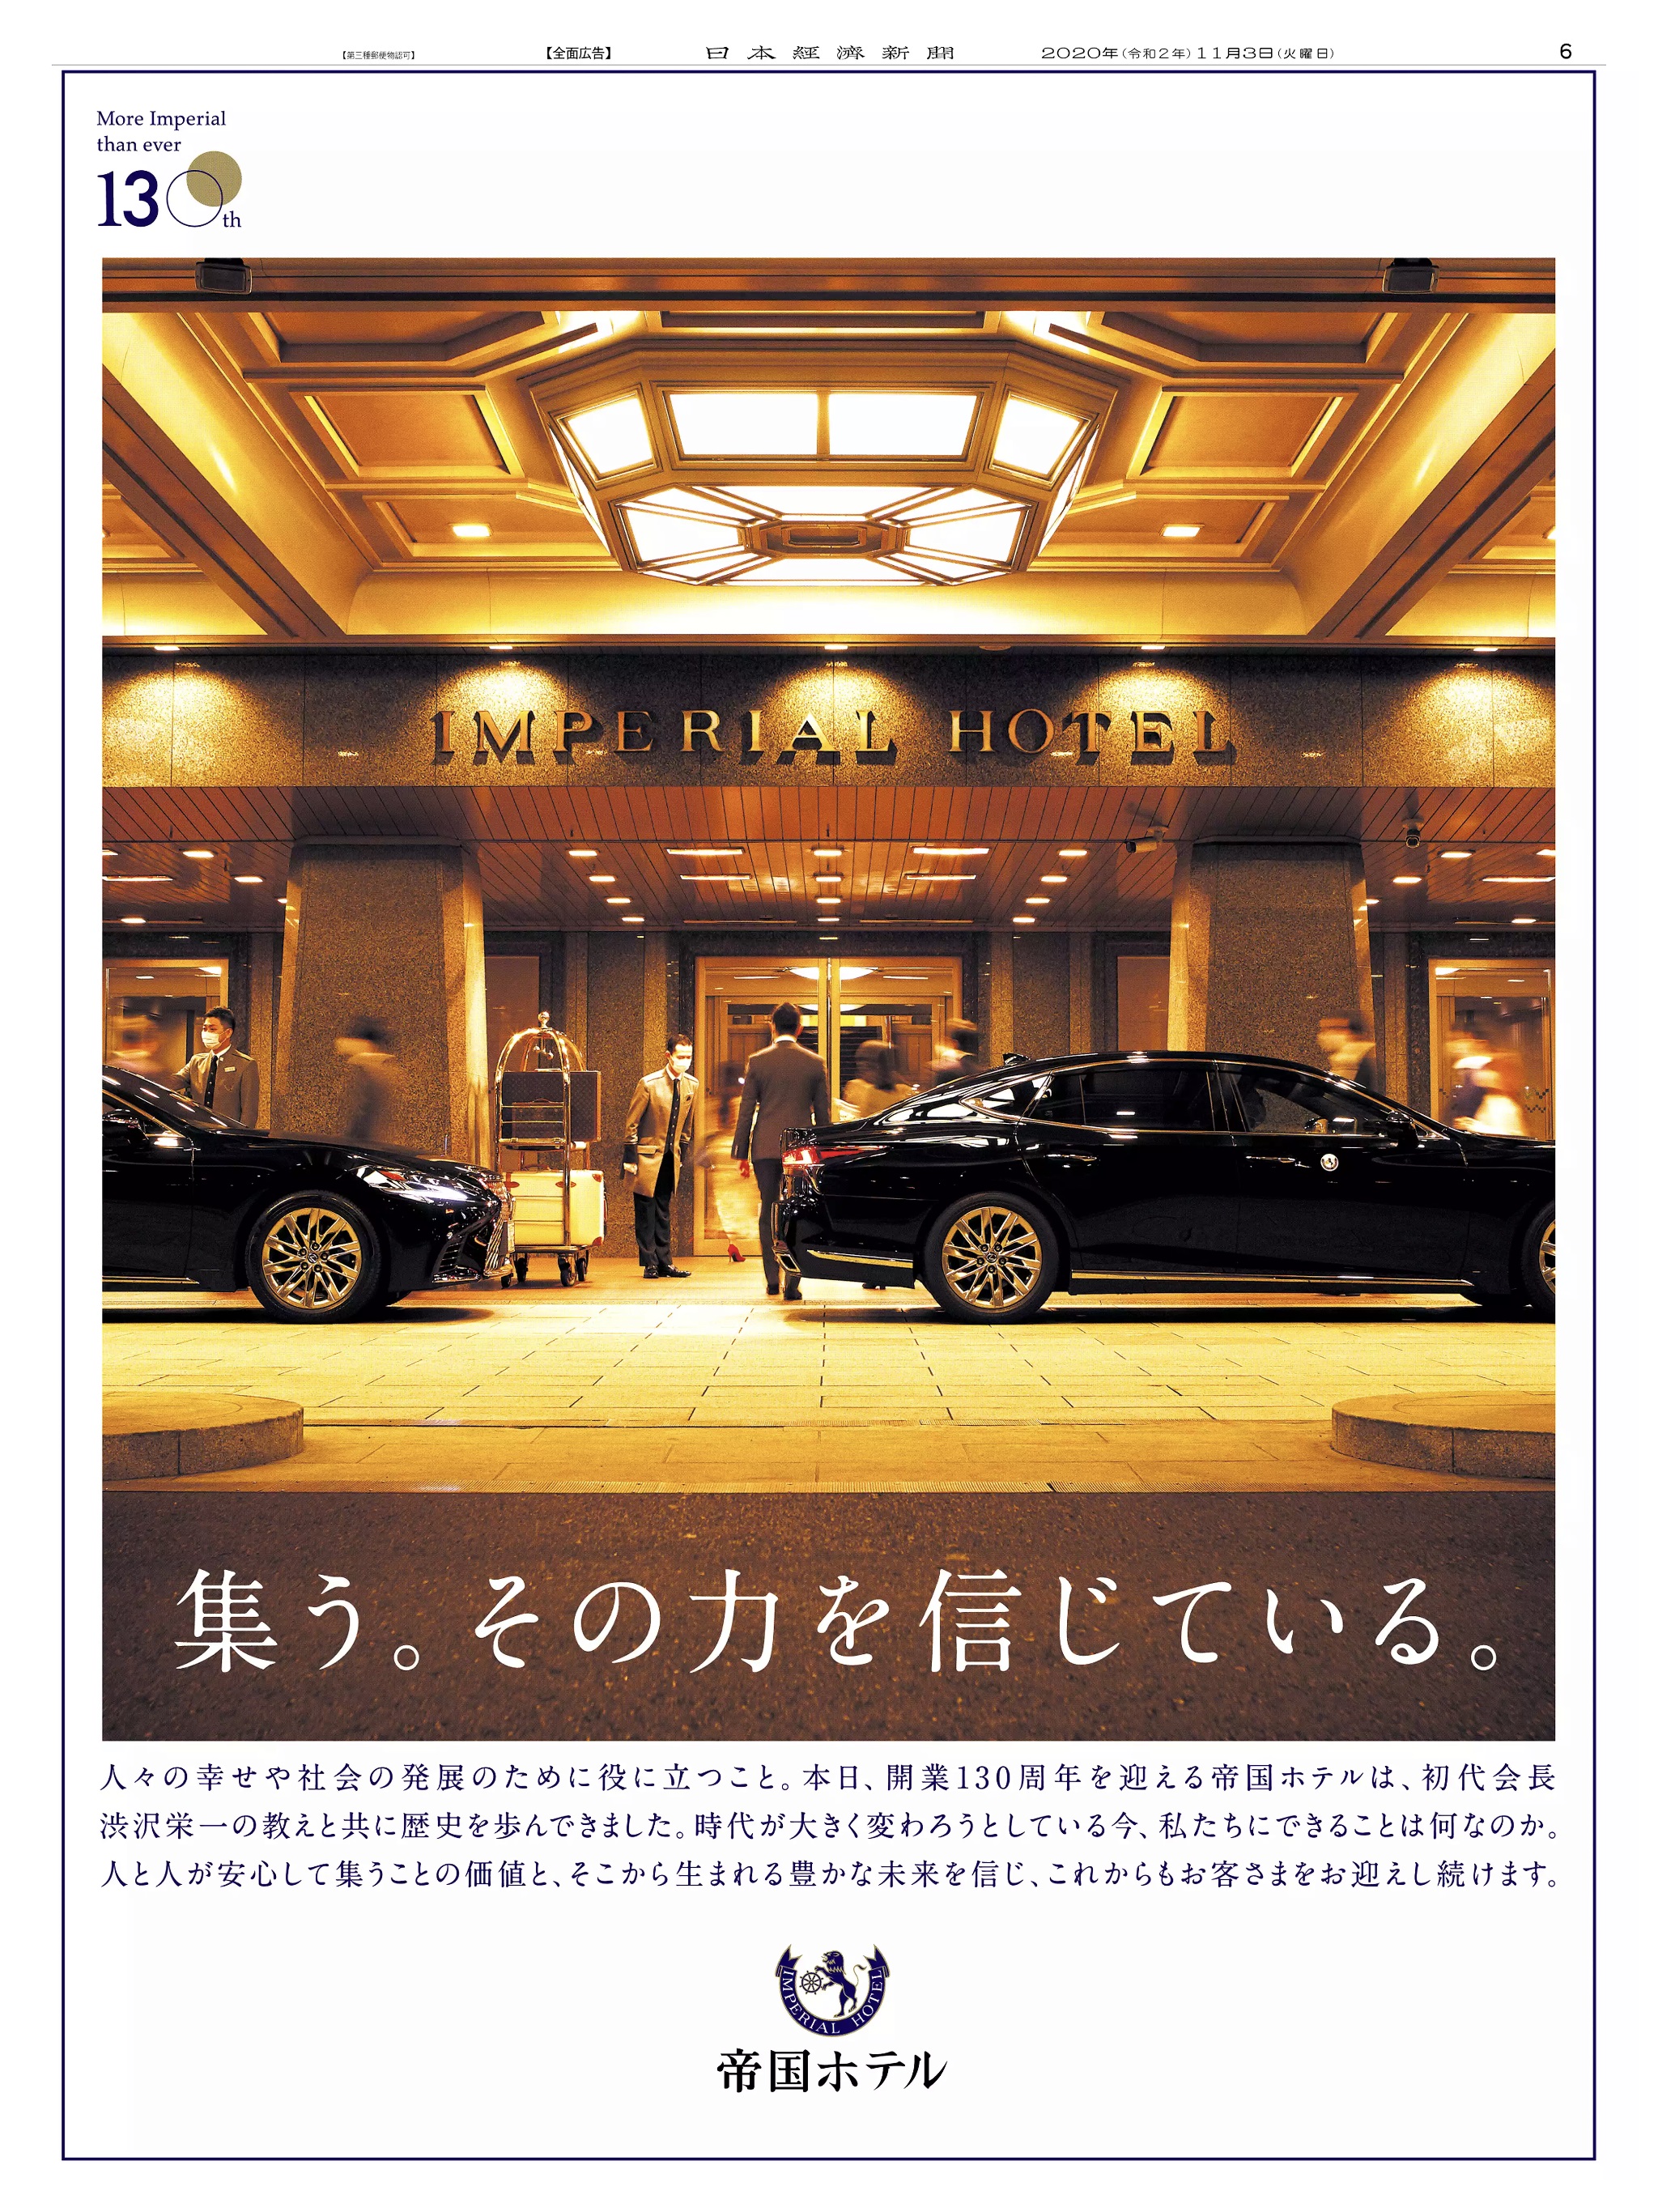 周年記念広告事例 「帝国ホテル 開業130周年」